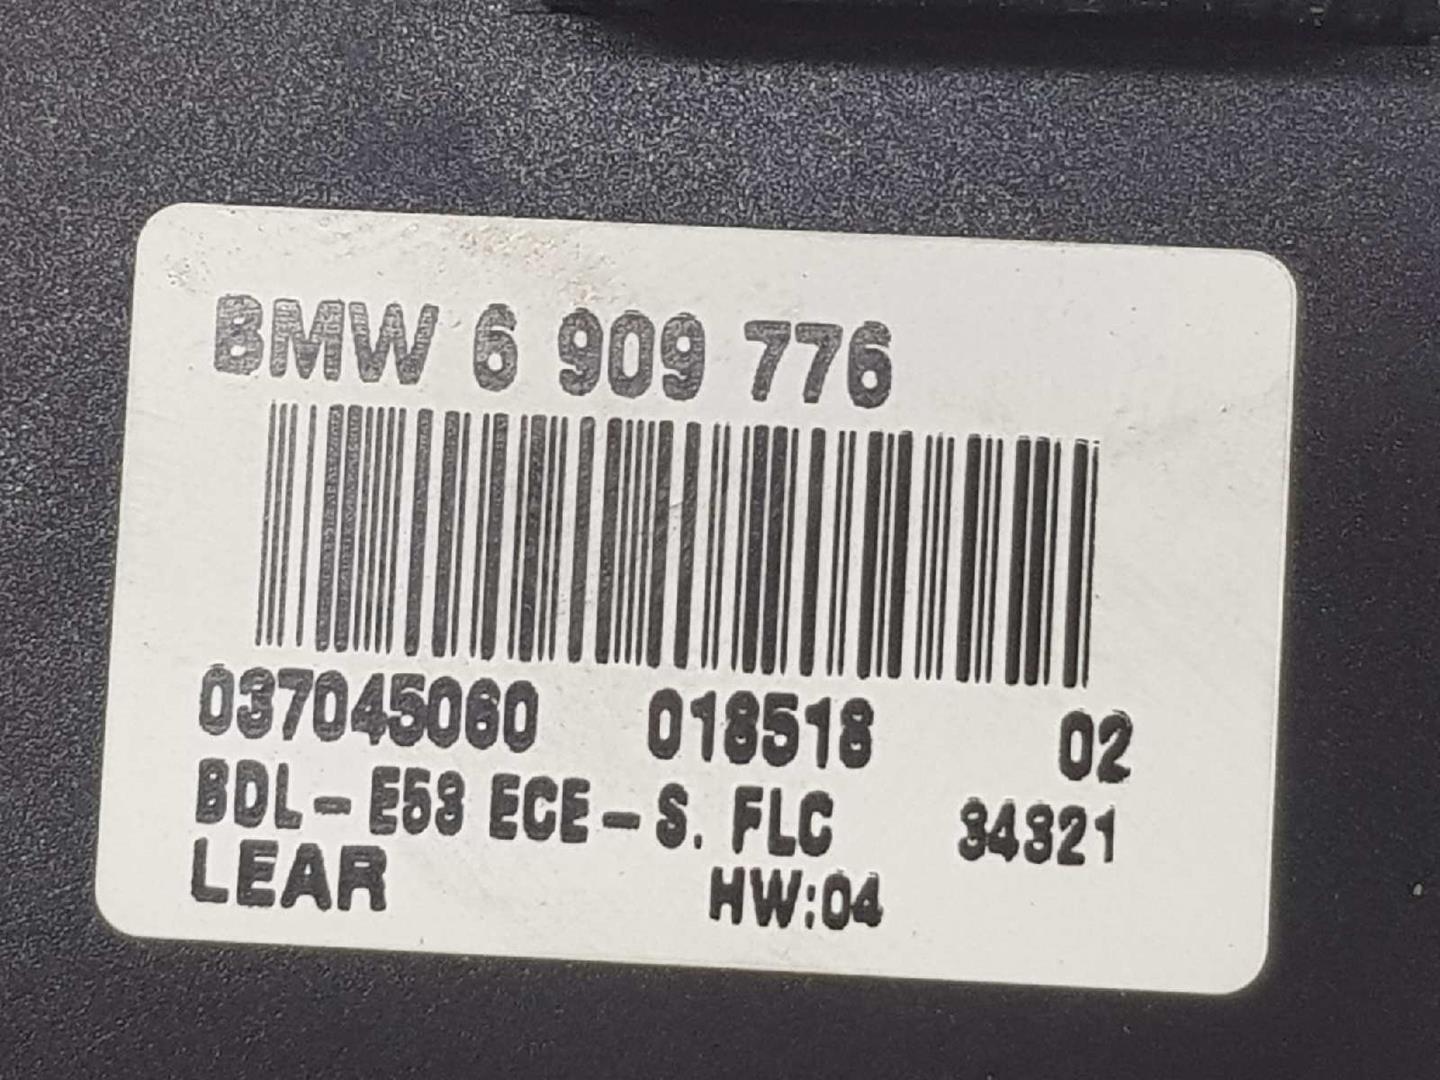 BMW X5 E53 (1999-2006) Headlight Switch Control Unit 61316909776, 6909776, 037045060 19897101